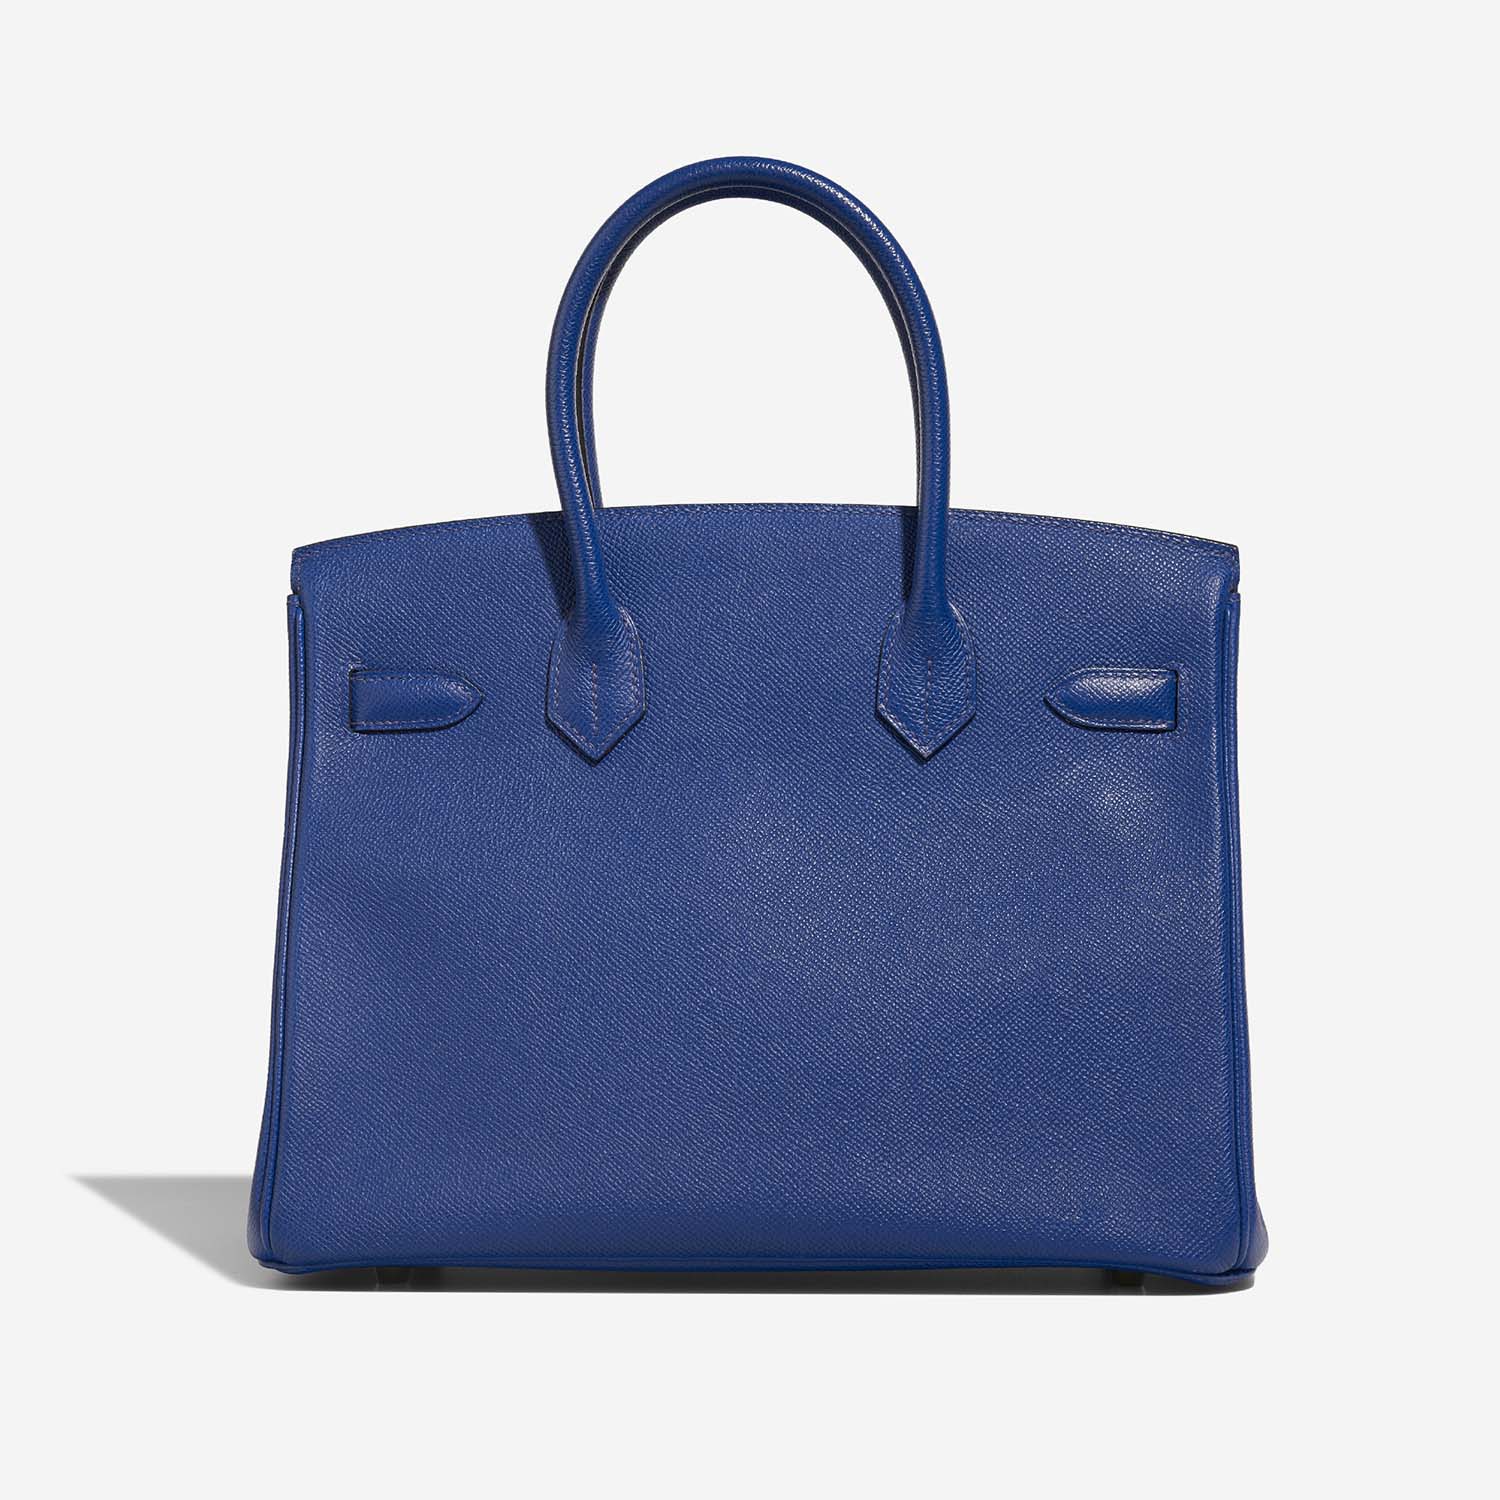 Hermès Birkin 30 BleuElectrique Zurück | Verkaufen Sie Ihre Designertasche auf Saclab.com